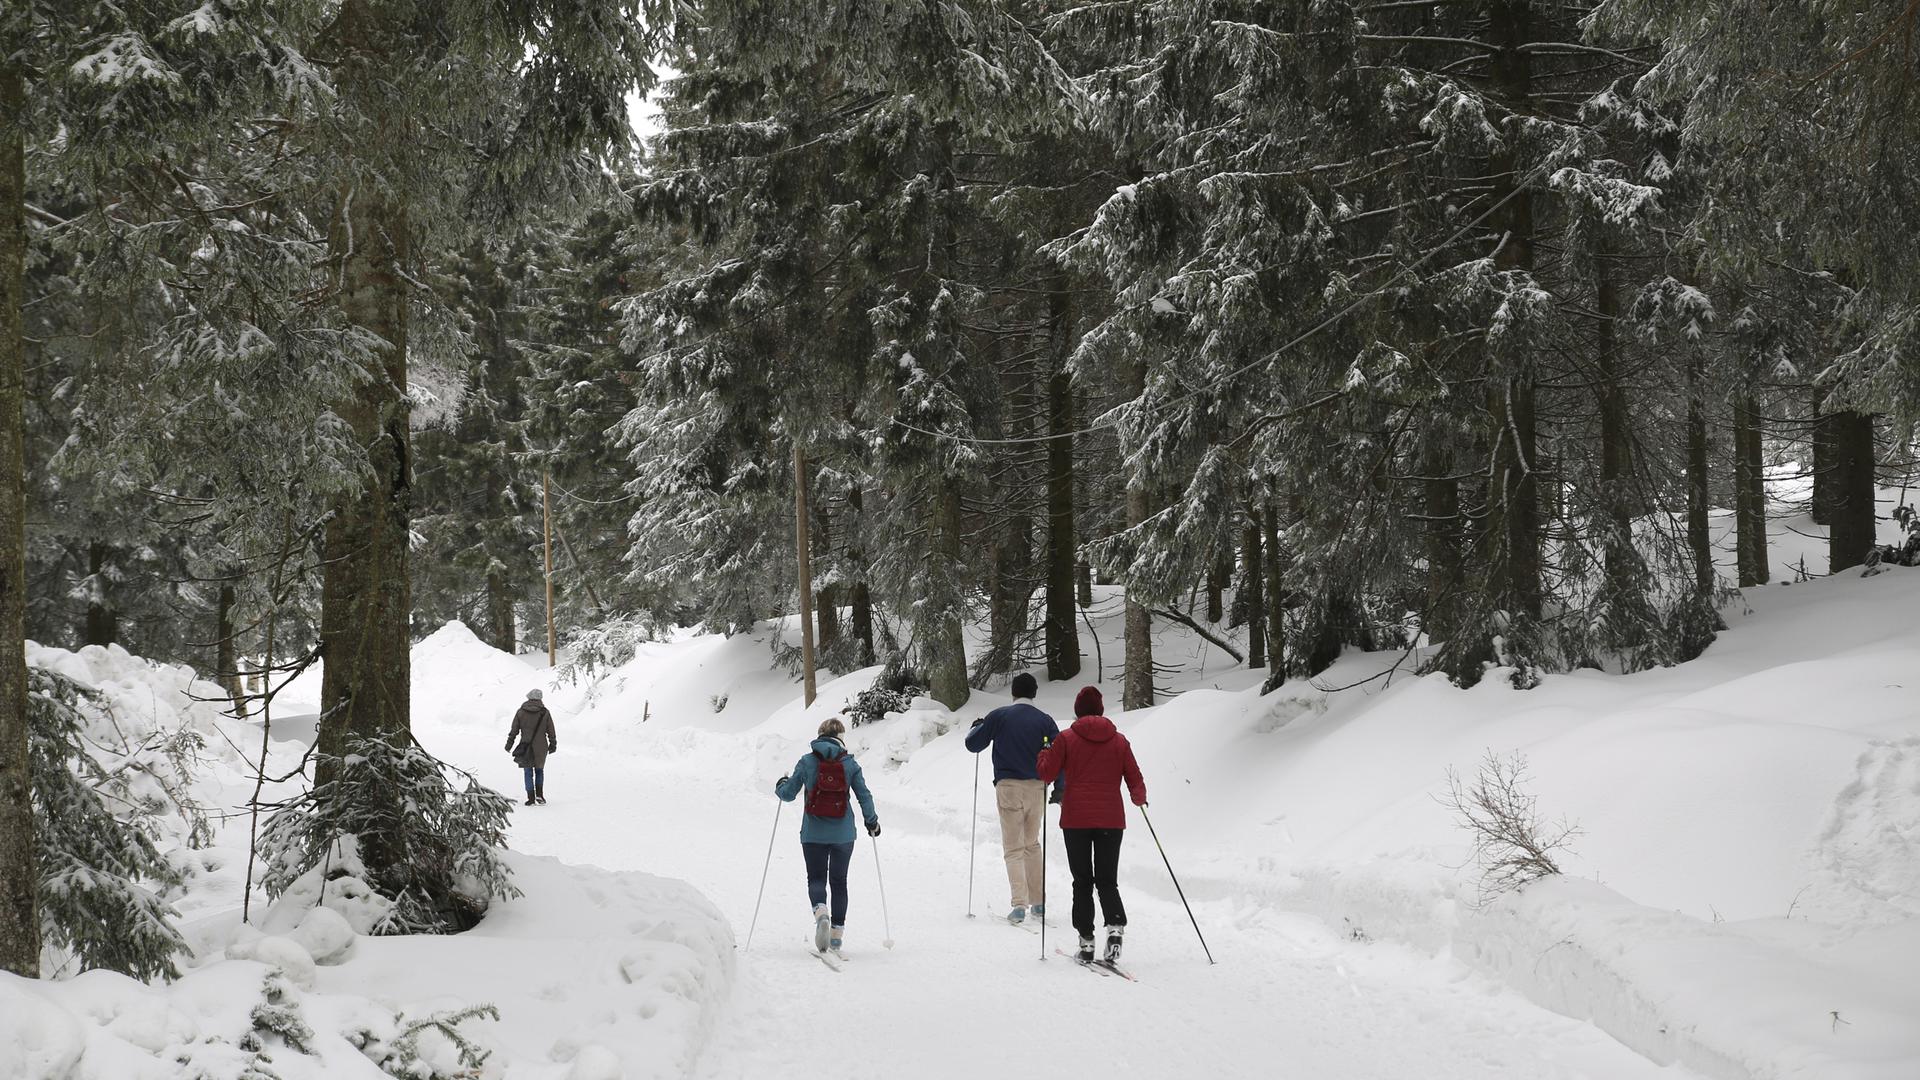 Ein Langlauf-Paradies: Im Schwarzwald gibt es viele Ski-Strecken für Wintersportler. Im Bild ist die Loipe auf dem Metaweg am Ruhestein zu sehen.